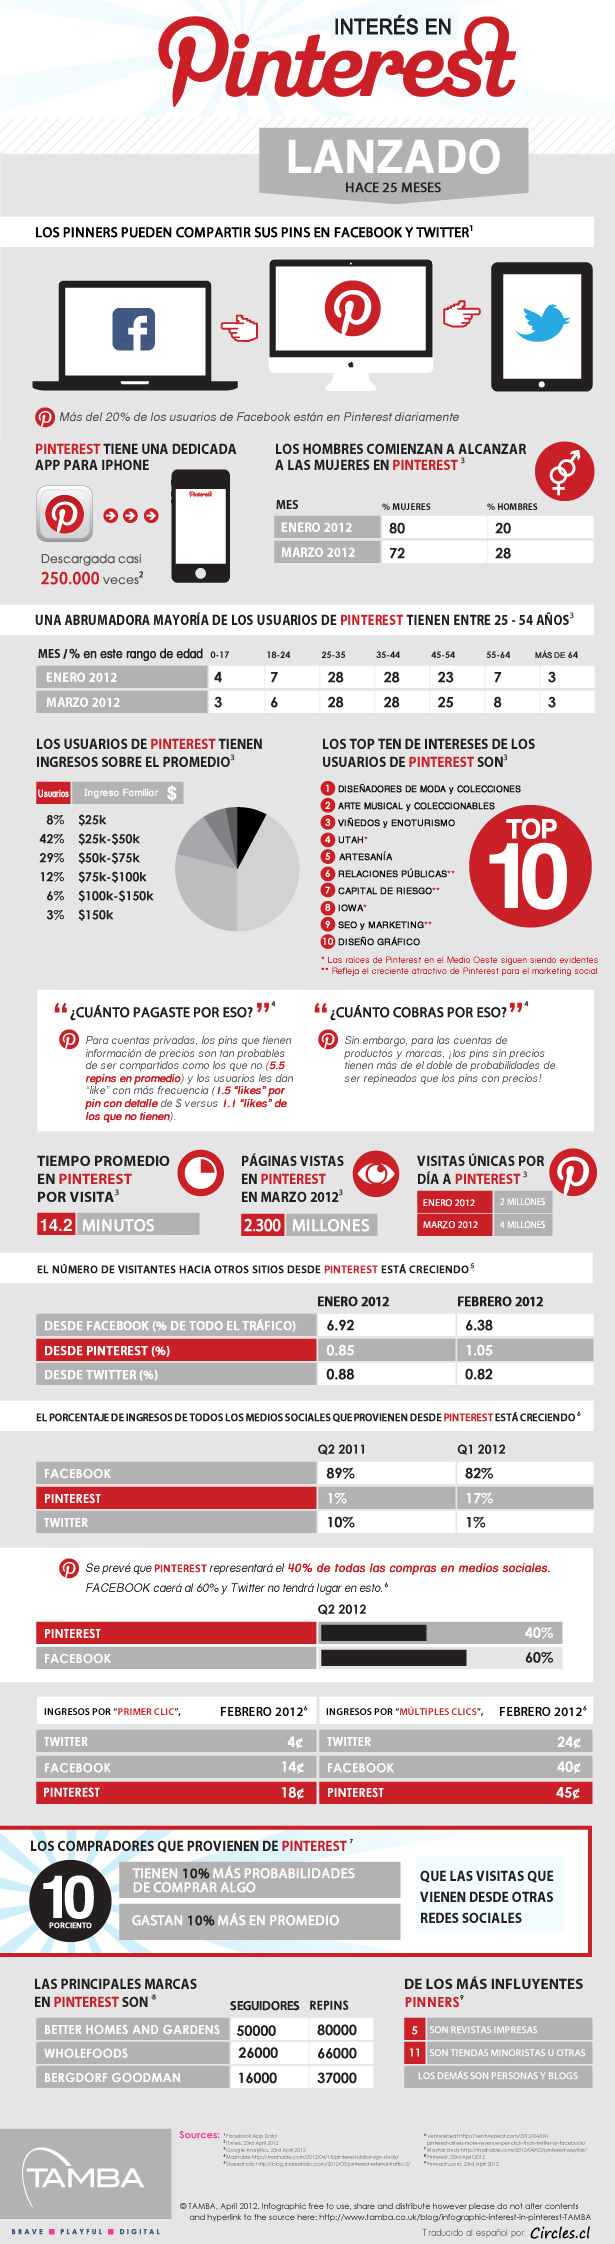 Interés en Pinterest, Infografía 2012